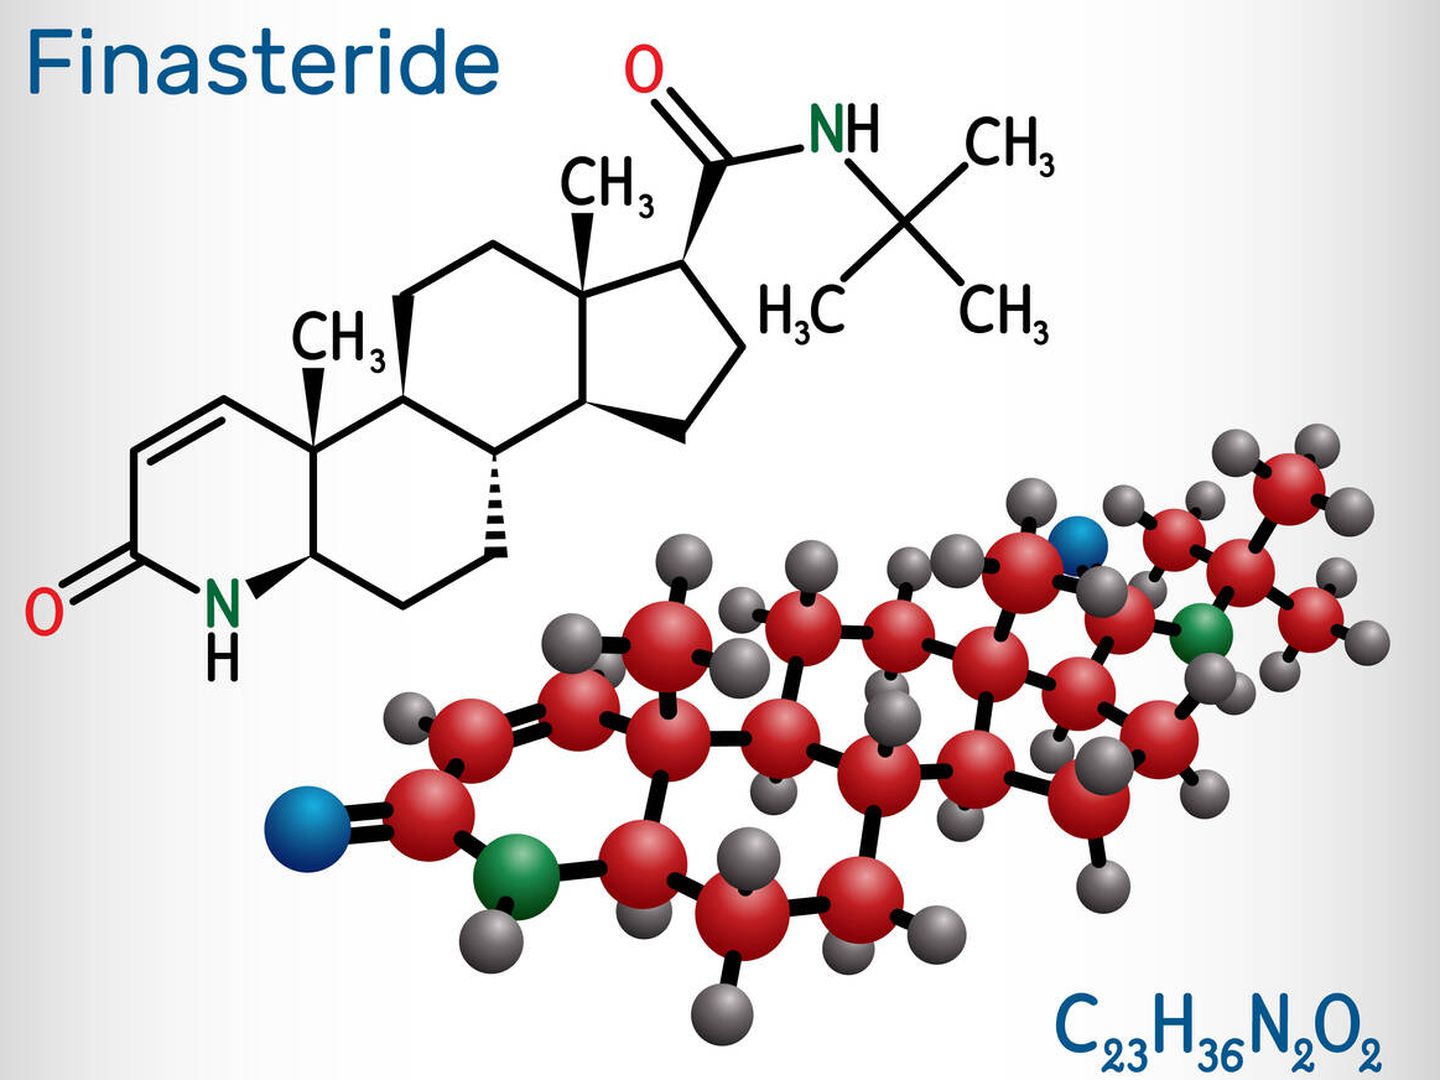 Molécula de finasterida. (iStock)